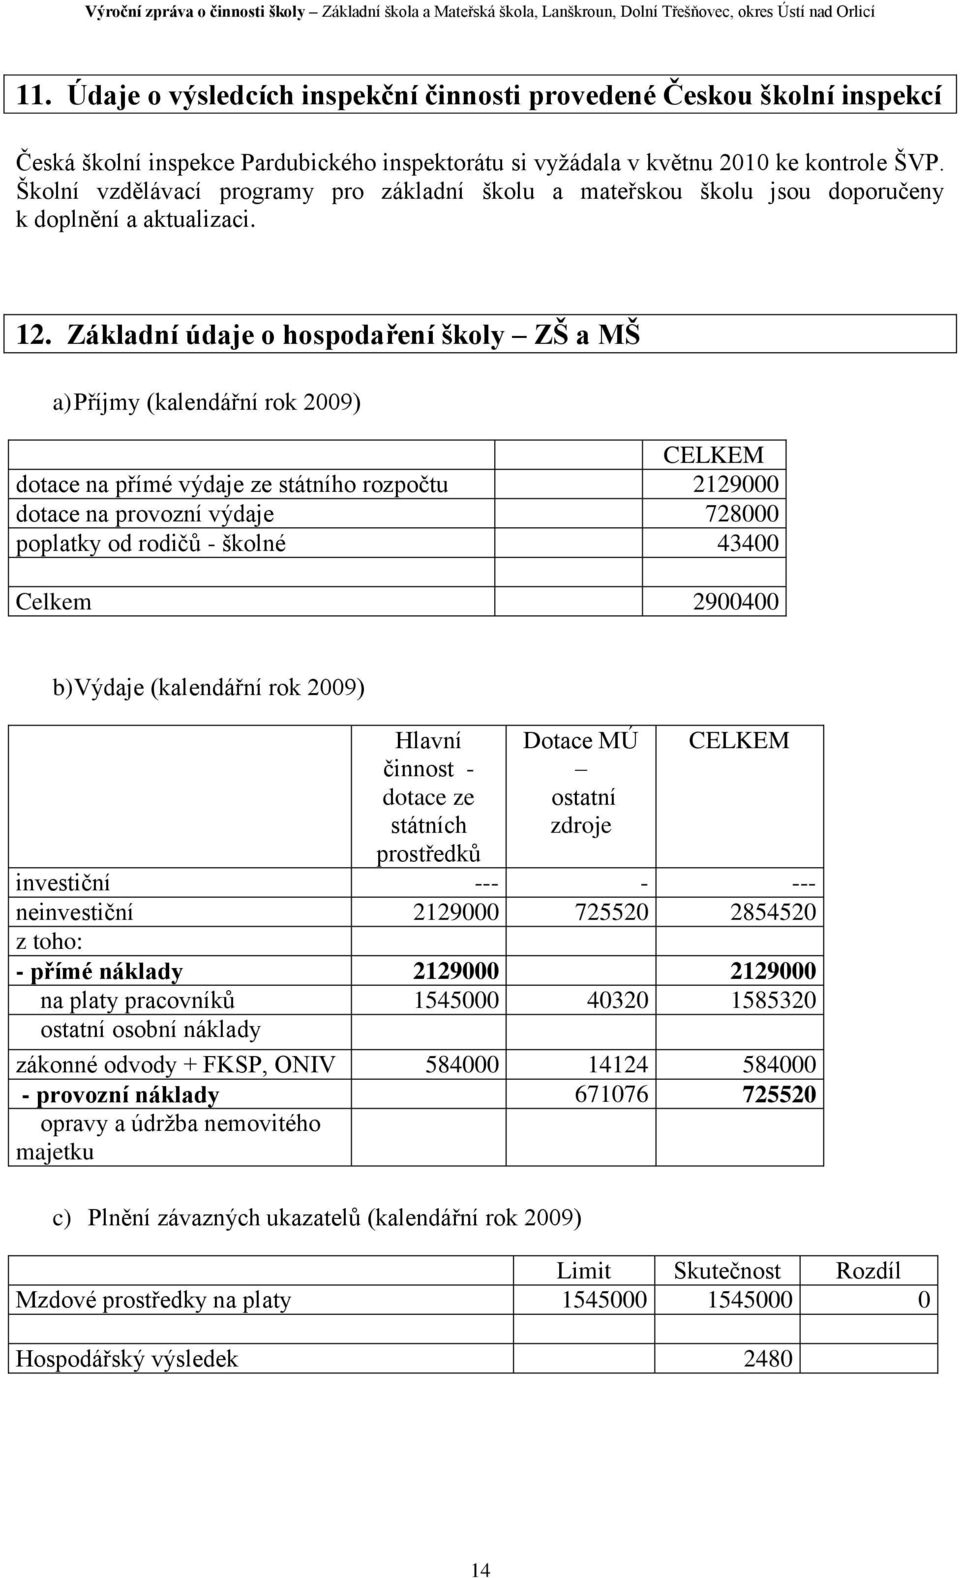 Základní údaje o hospodaření školy ZŠ a MŠ a) Příjmy (kalendářní rok 2009) CELKEM dotace na přímé výdaje ze státního rozpočtu 2129000 dotace na provozní výdaje 728000 poplatky od rodičů - školné